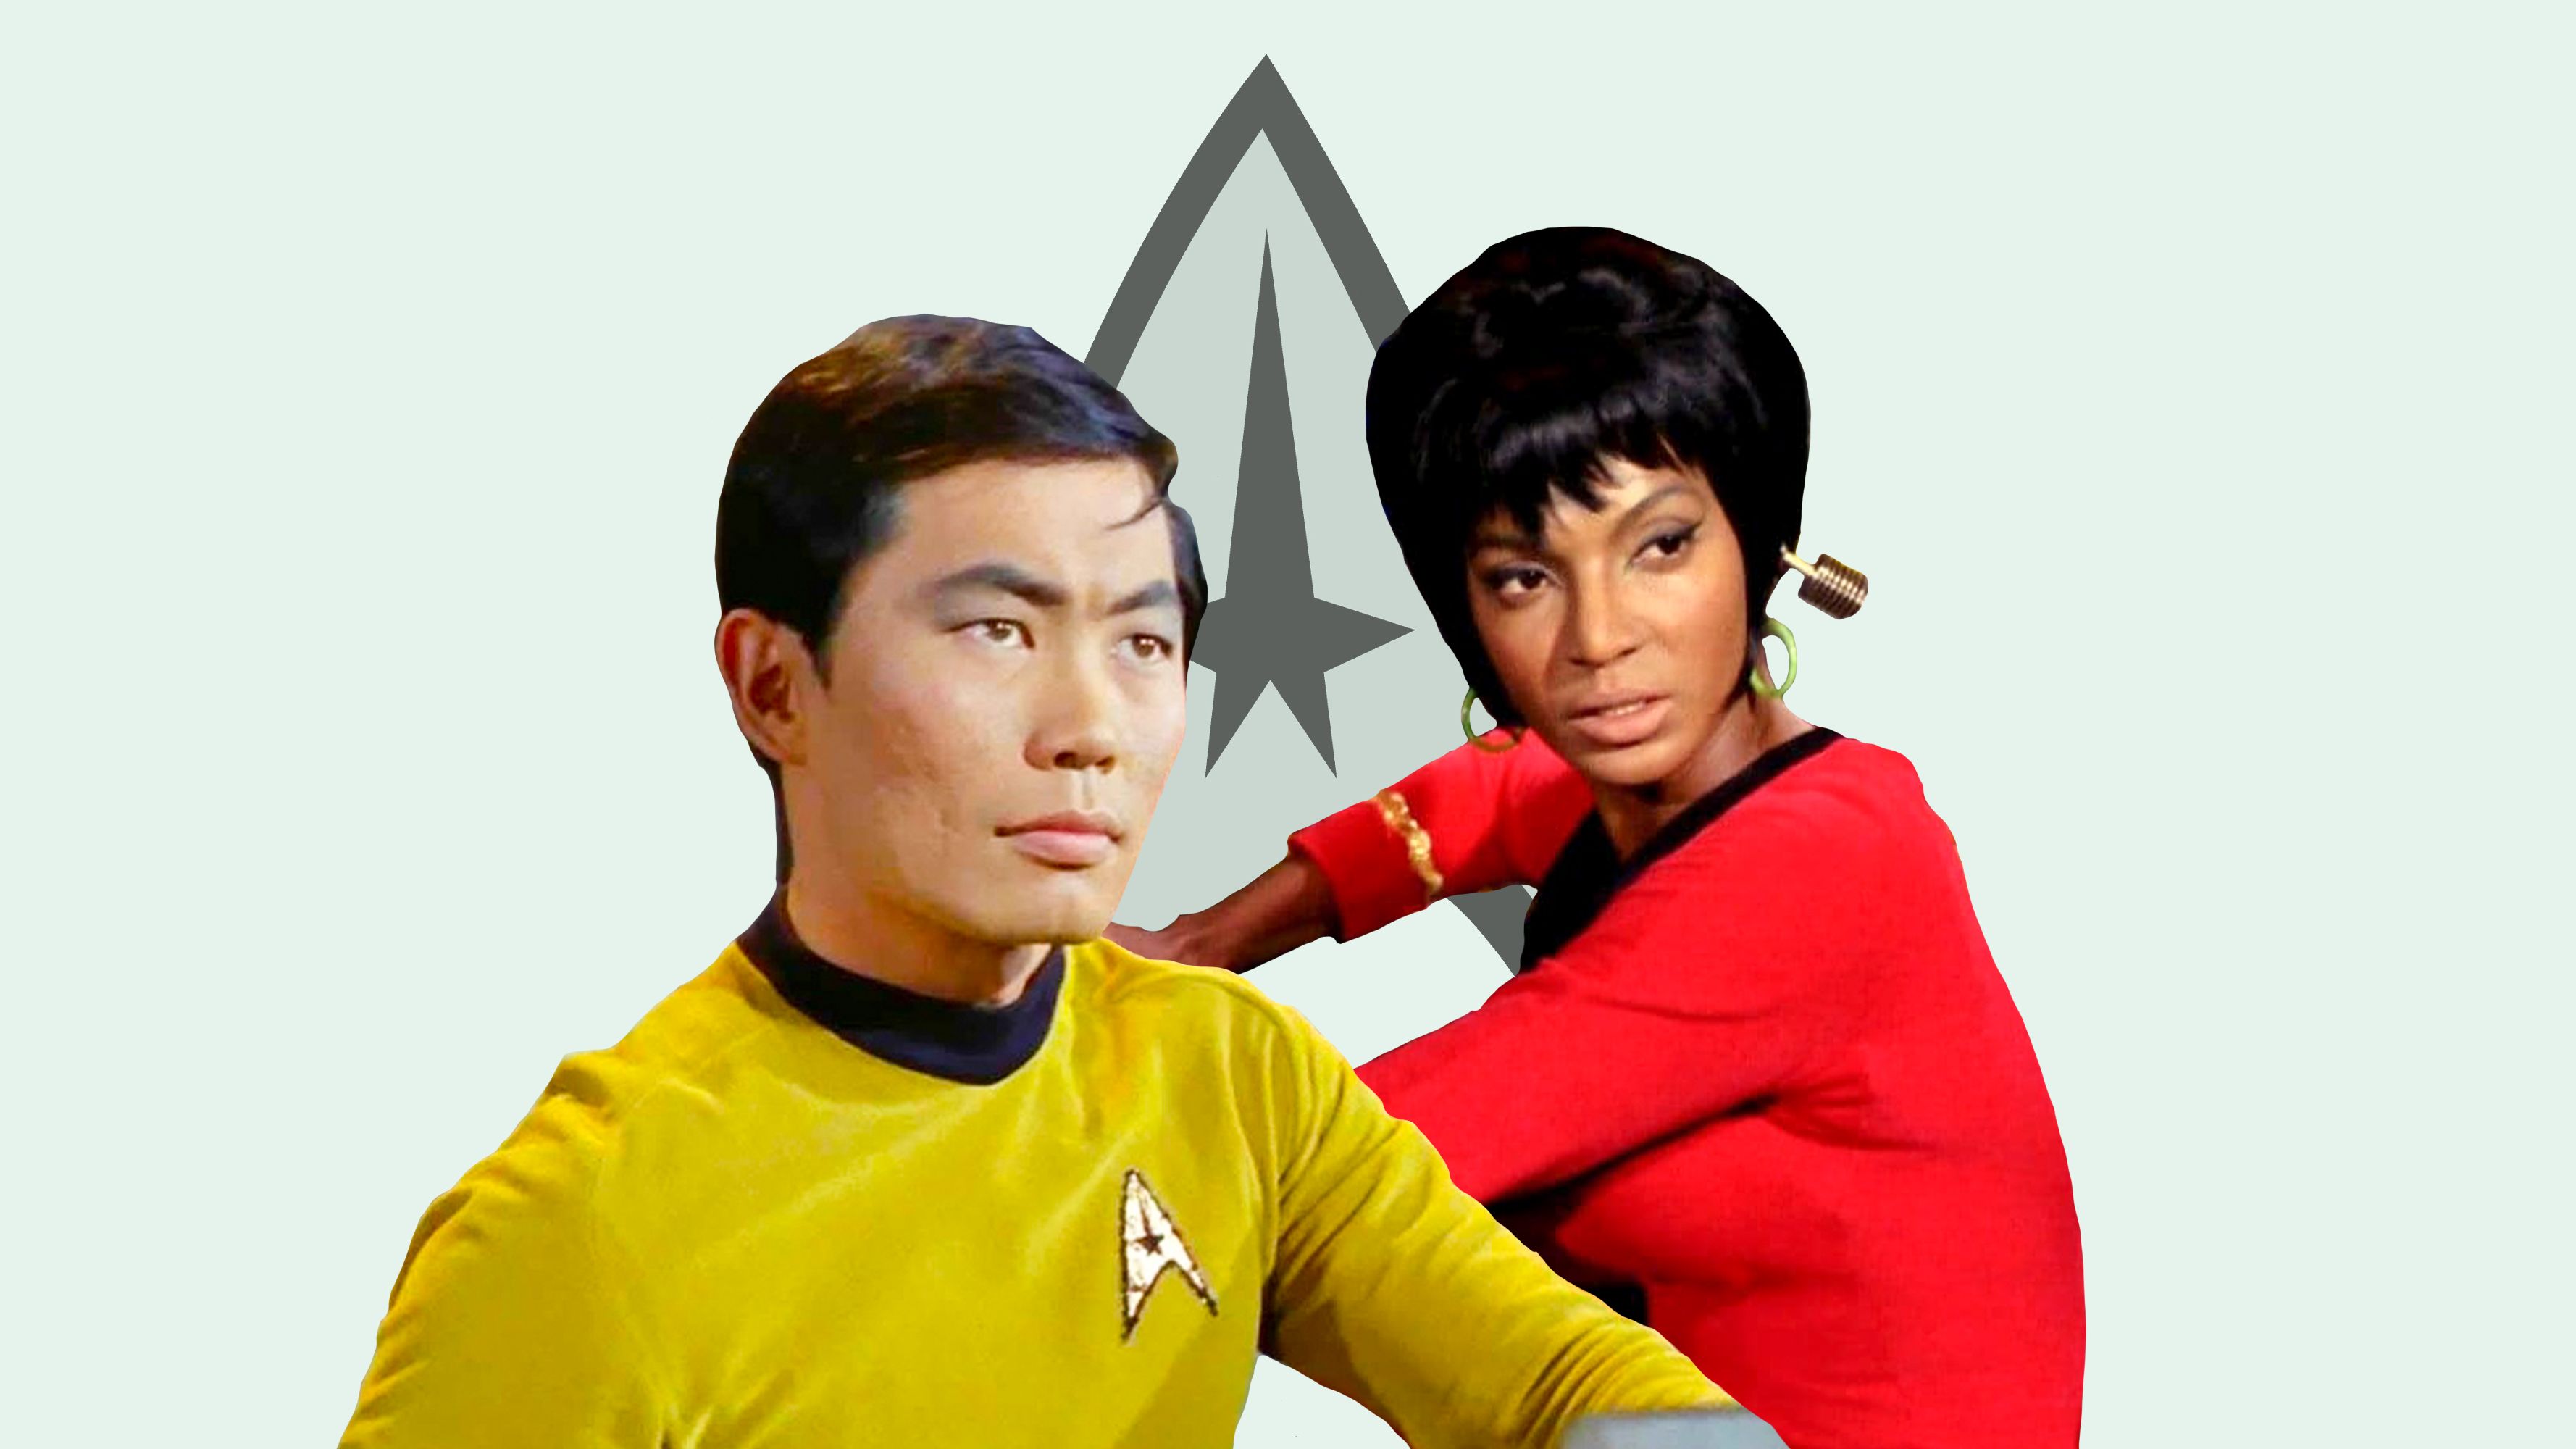 Star Trek' Diversity: How the Series Embraced, but Fell Short of